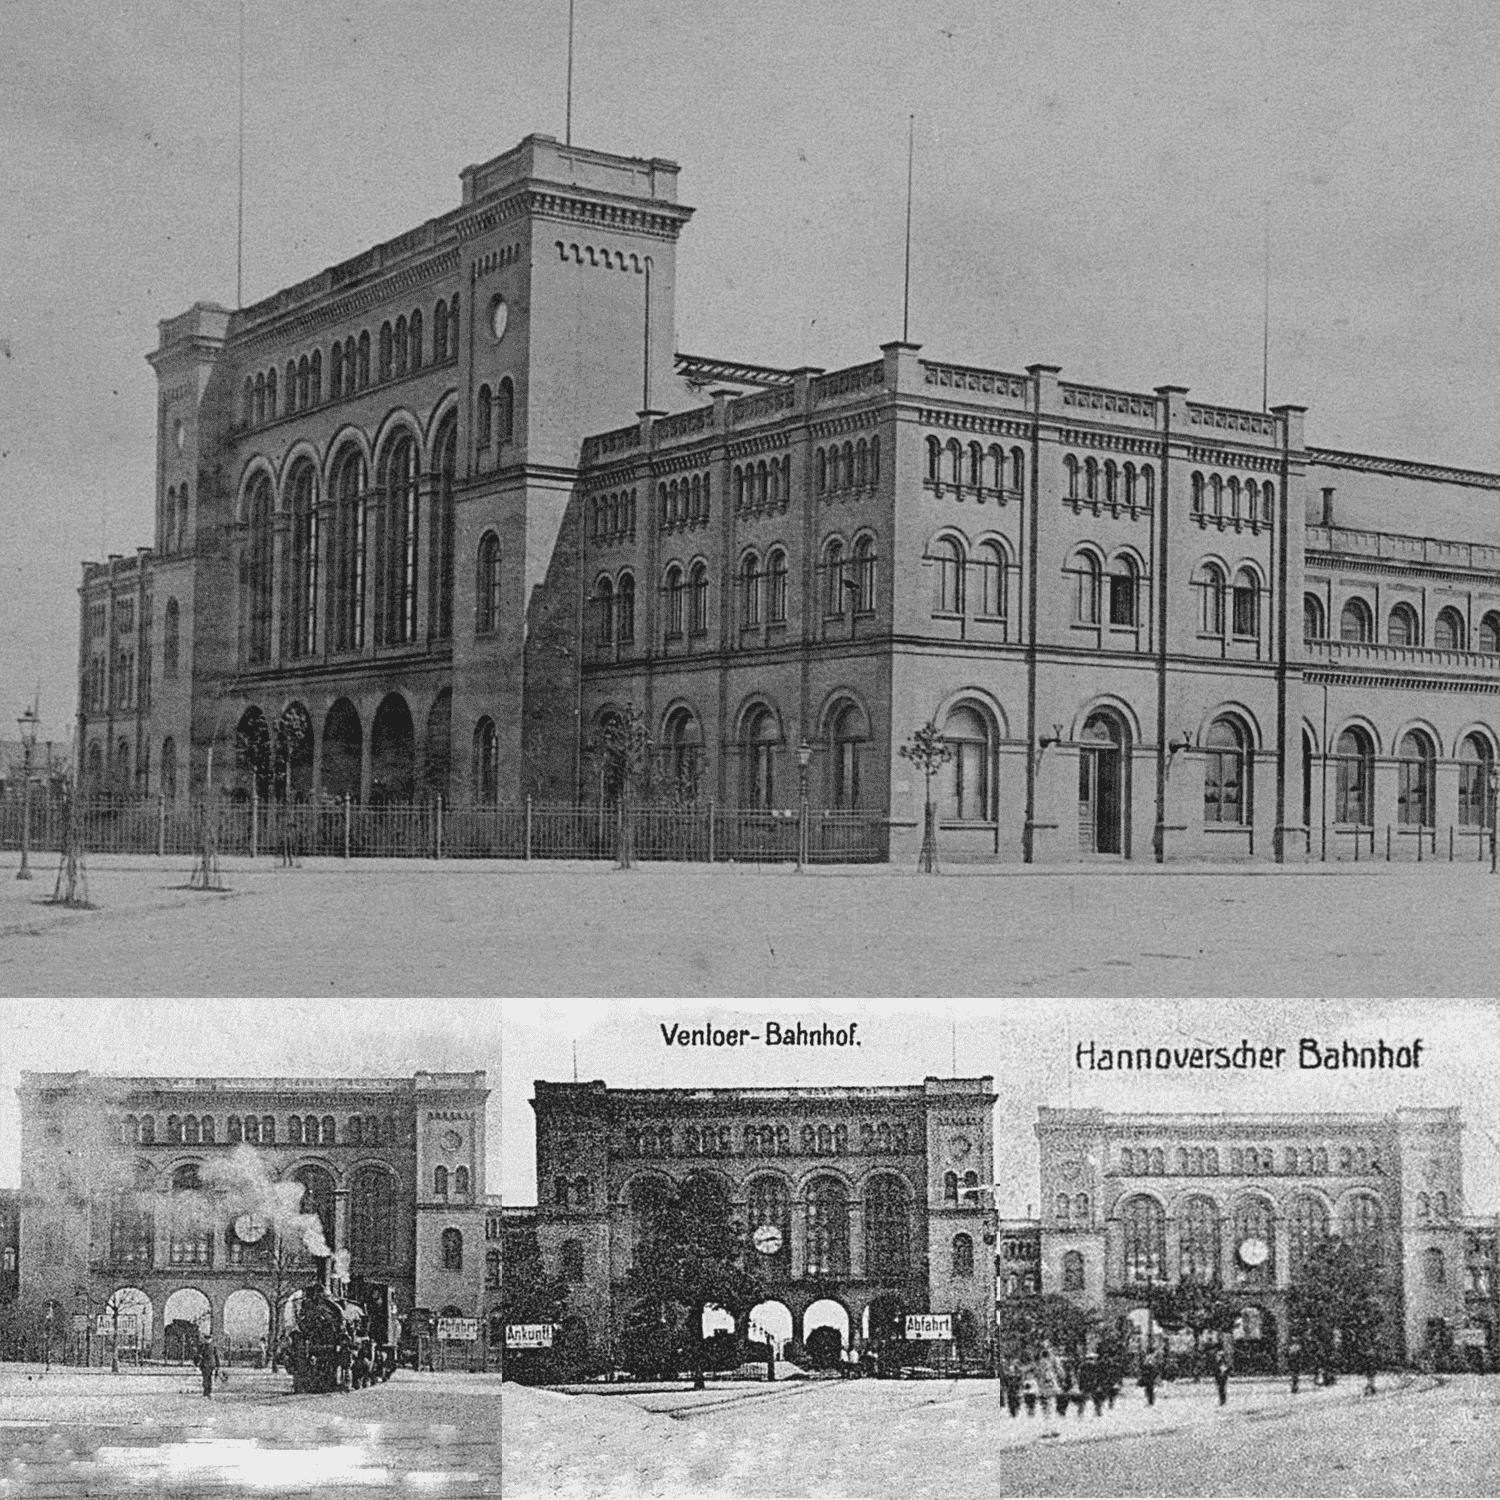 Der Hannoversche Bahnhof in Hamburg kurz nach der Eröffnung und zwischen 1904 und 1906 (unten)